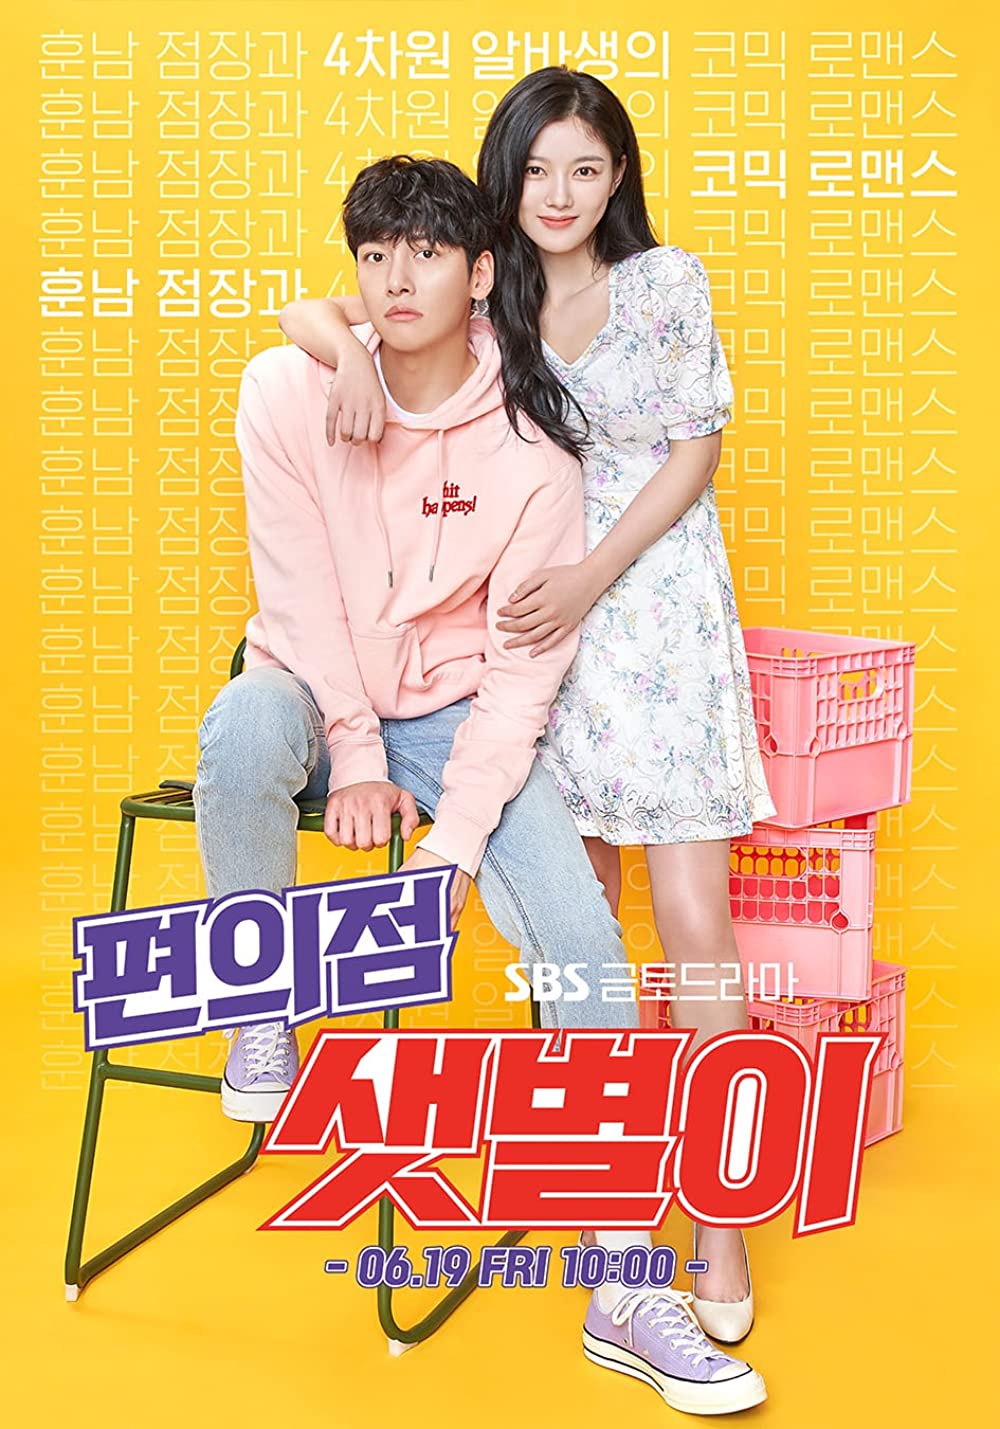 11 Drama Korea komedi romantis terbaik sulit dilupakan, Snowdrop juara